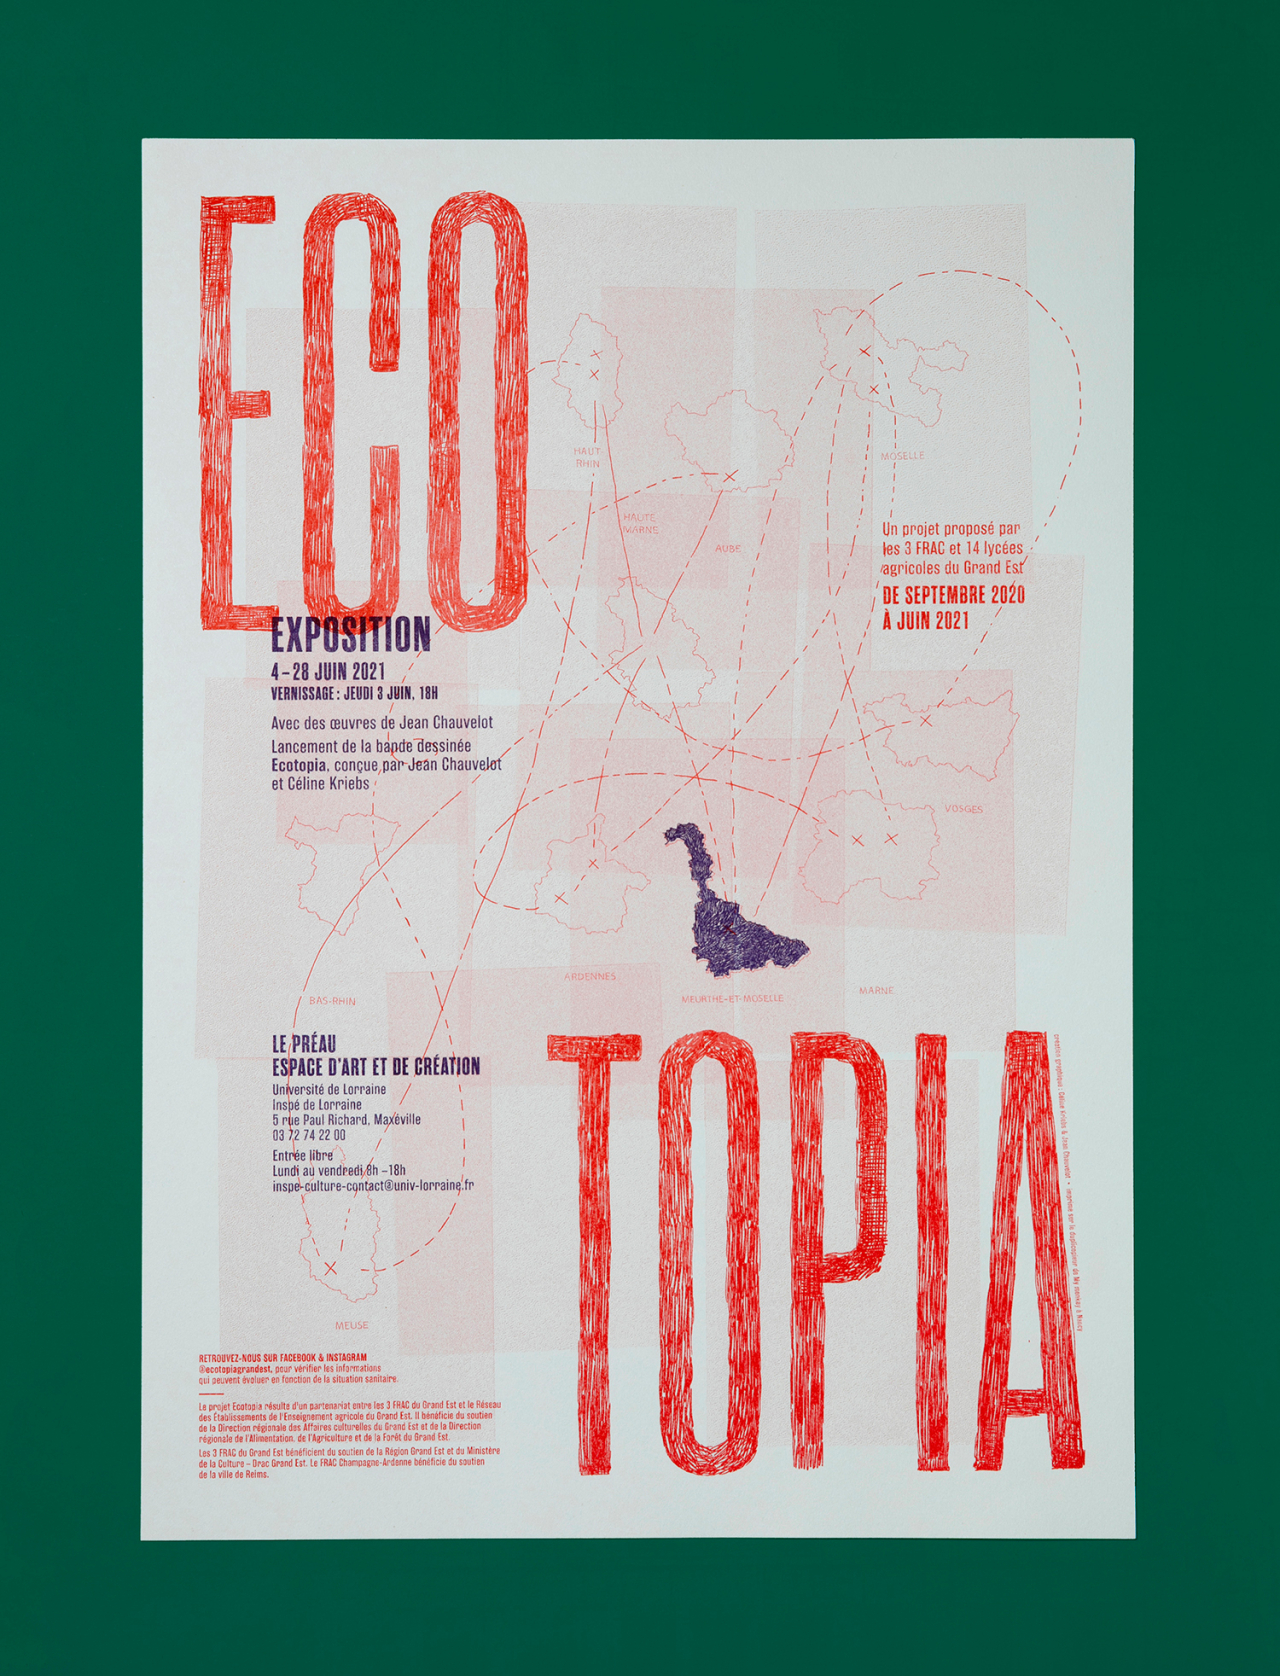 Ecotopia image #16